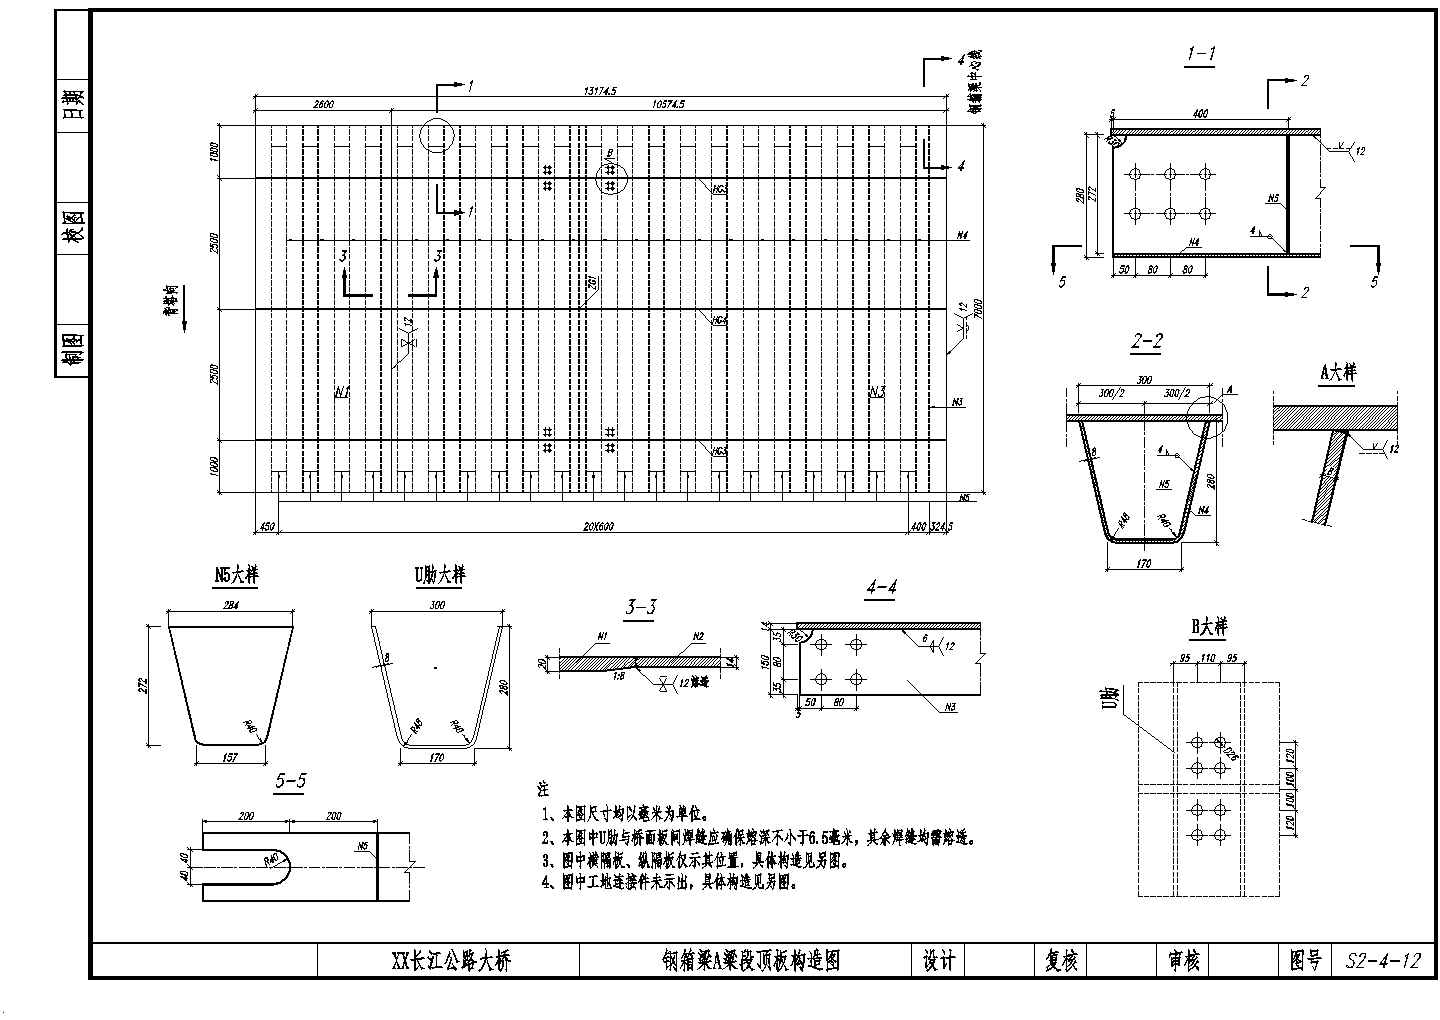 公路跨长江特大组合体系桥梁钢箱梁顶板、底板、腹板节点构造详图设计